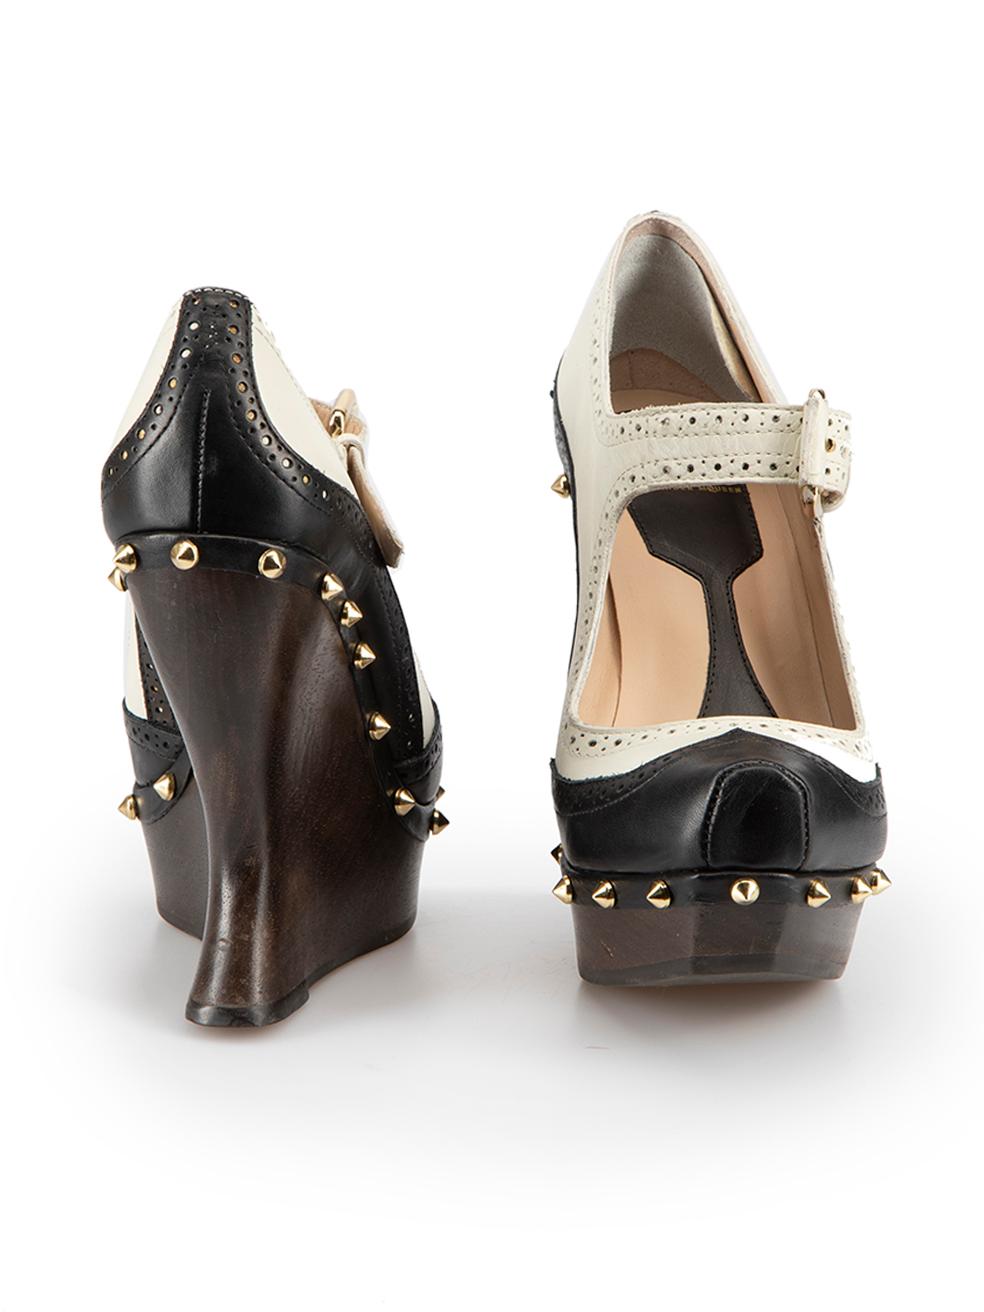 mcq heels